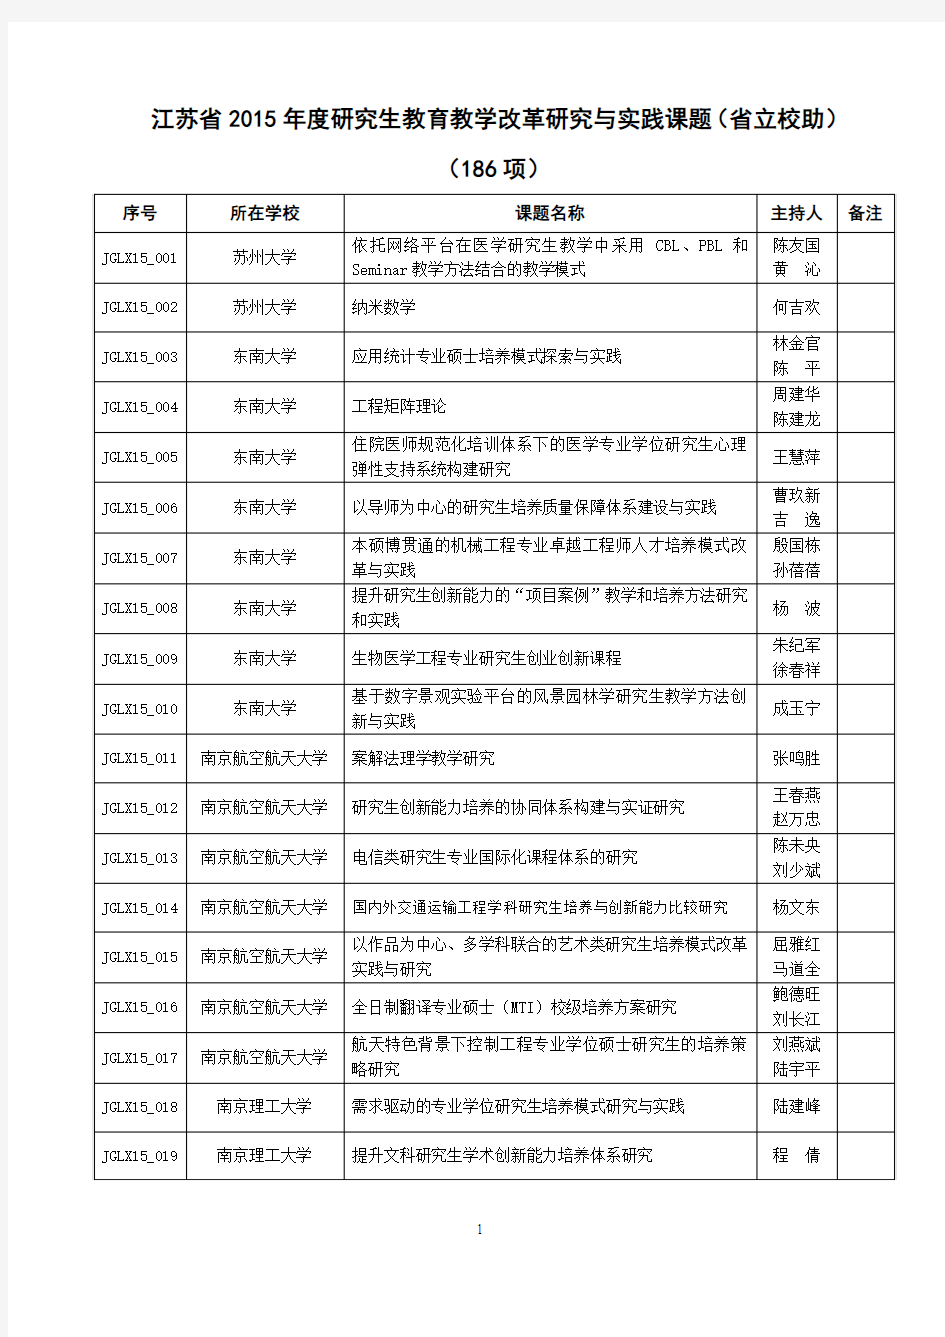 江苏省2015年度研究生教育教学改革研究与实践课题(省立校助)(186项)